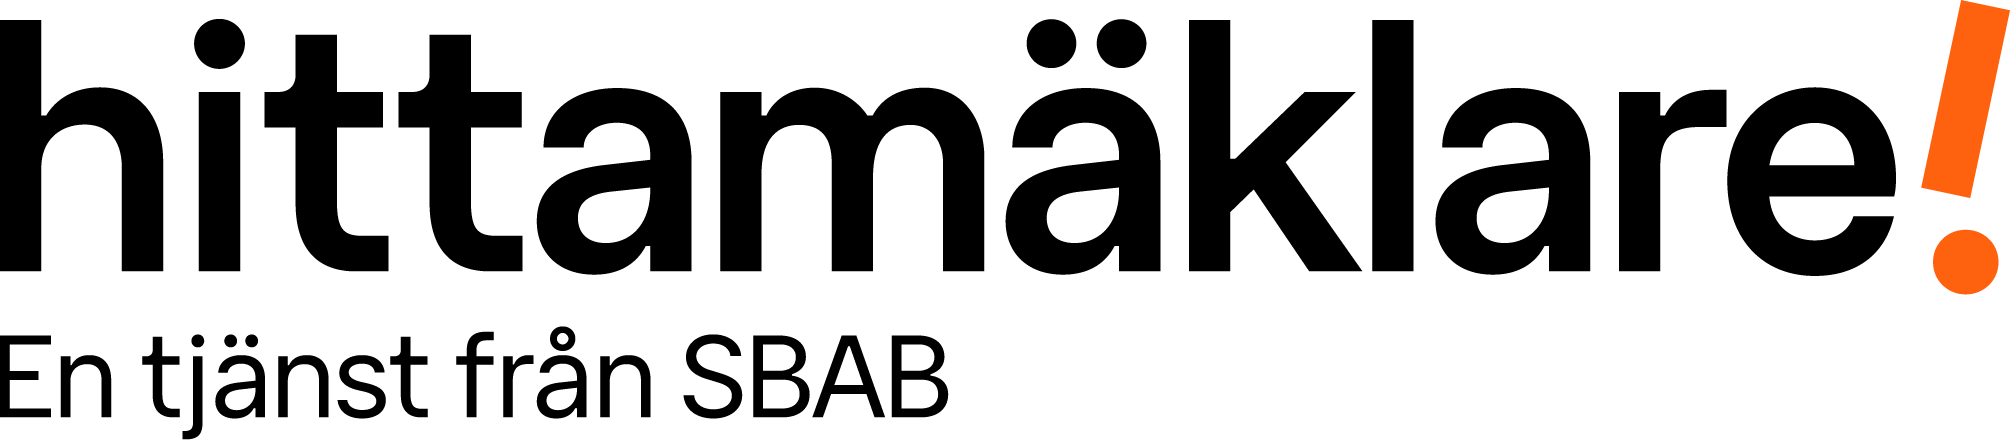 hittaMaklare logotype